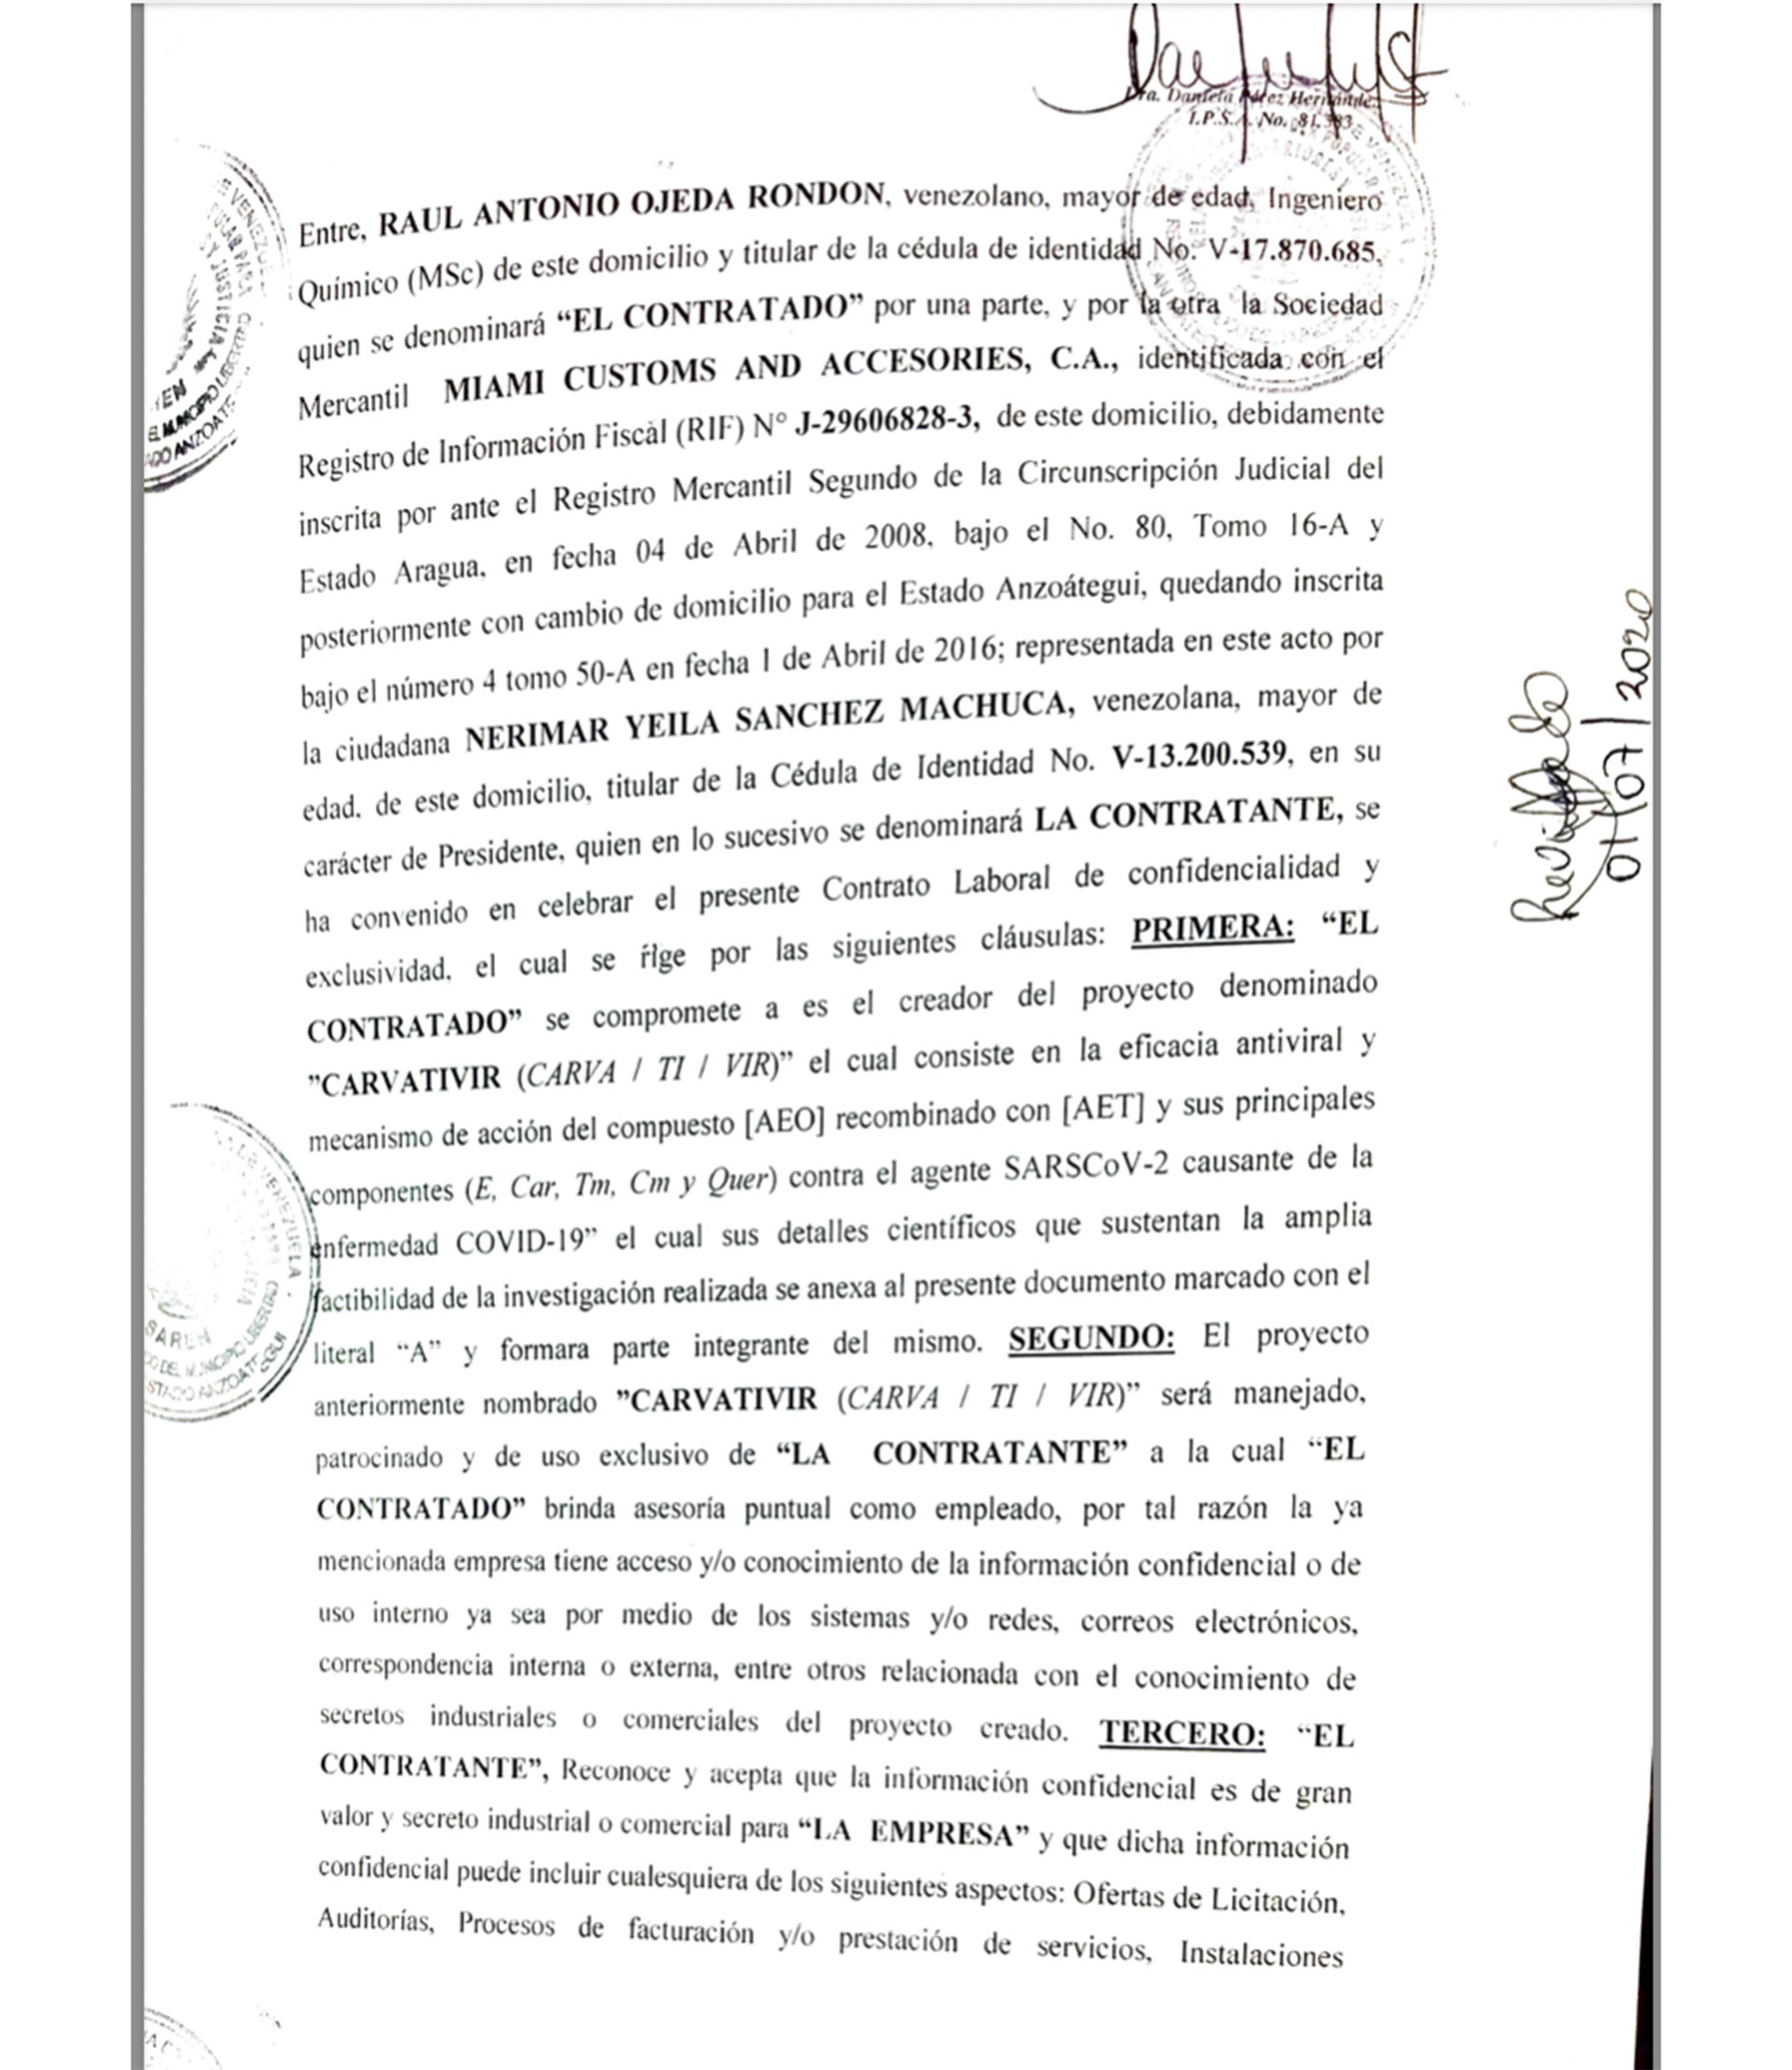 El acuerdo de confidencialidad que firmó Raúl Ojeda Rondón